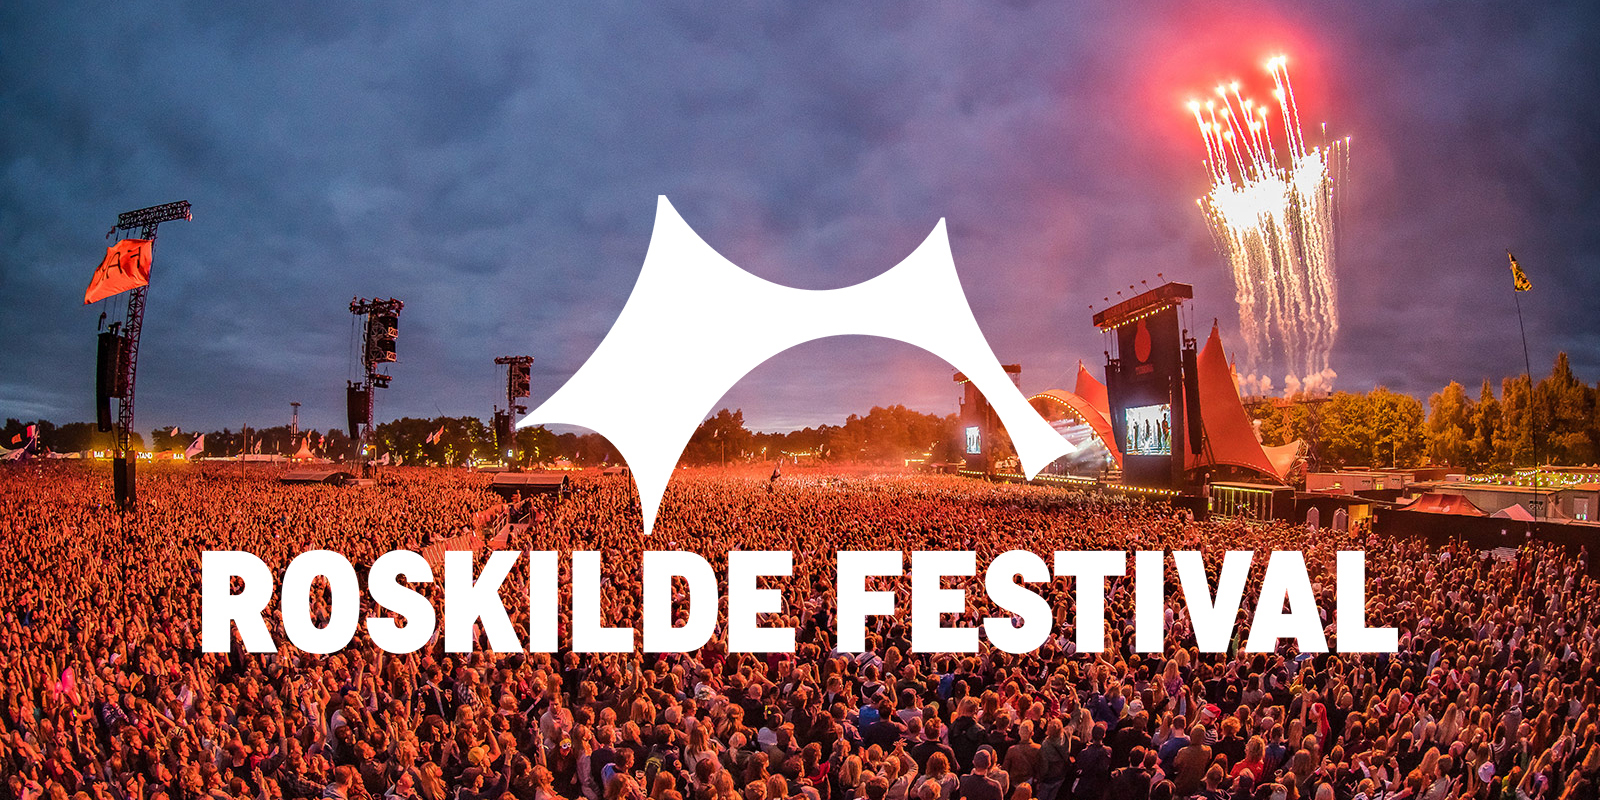 Roskilde Festival 2018 showcase